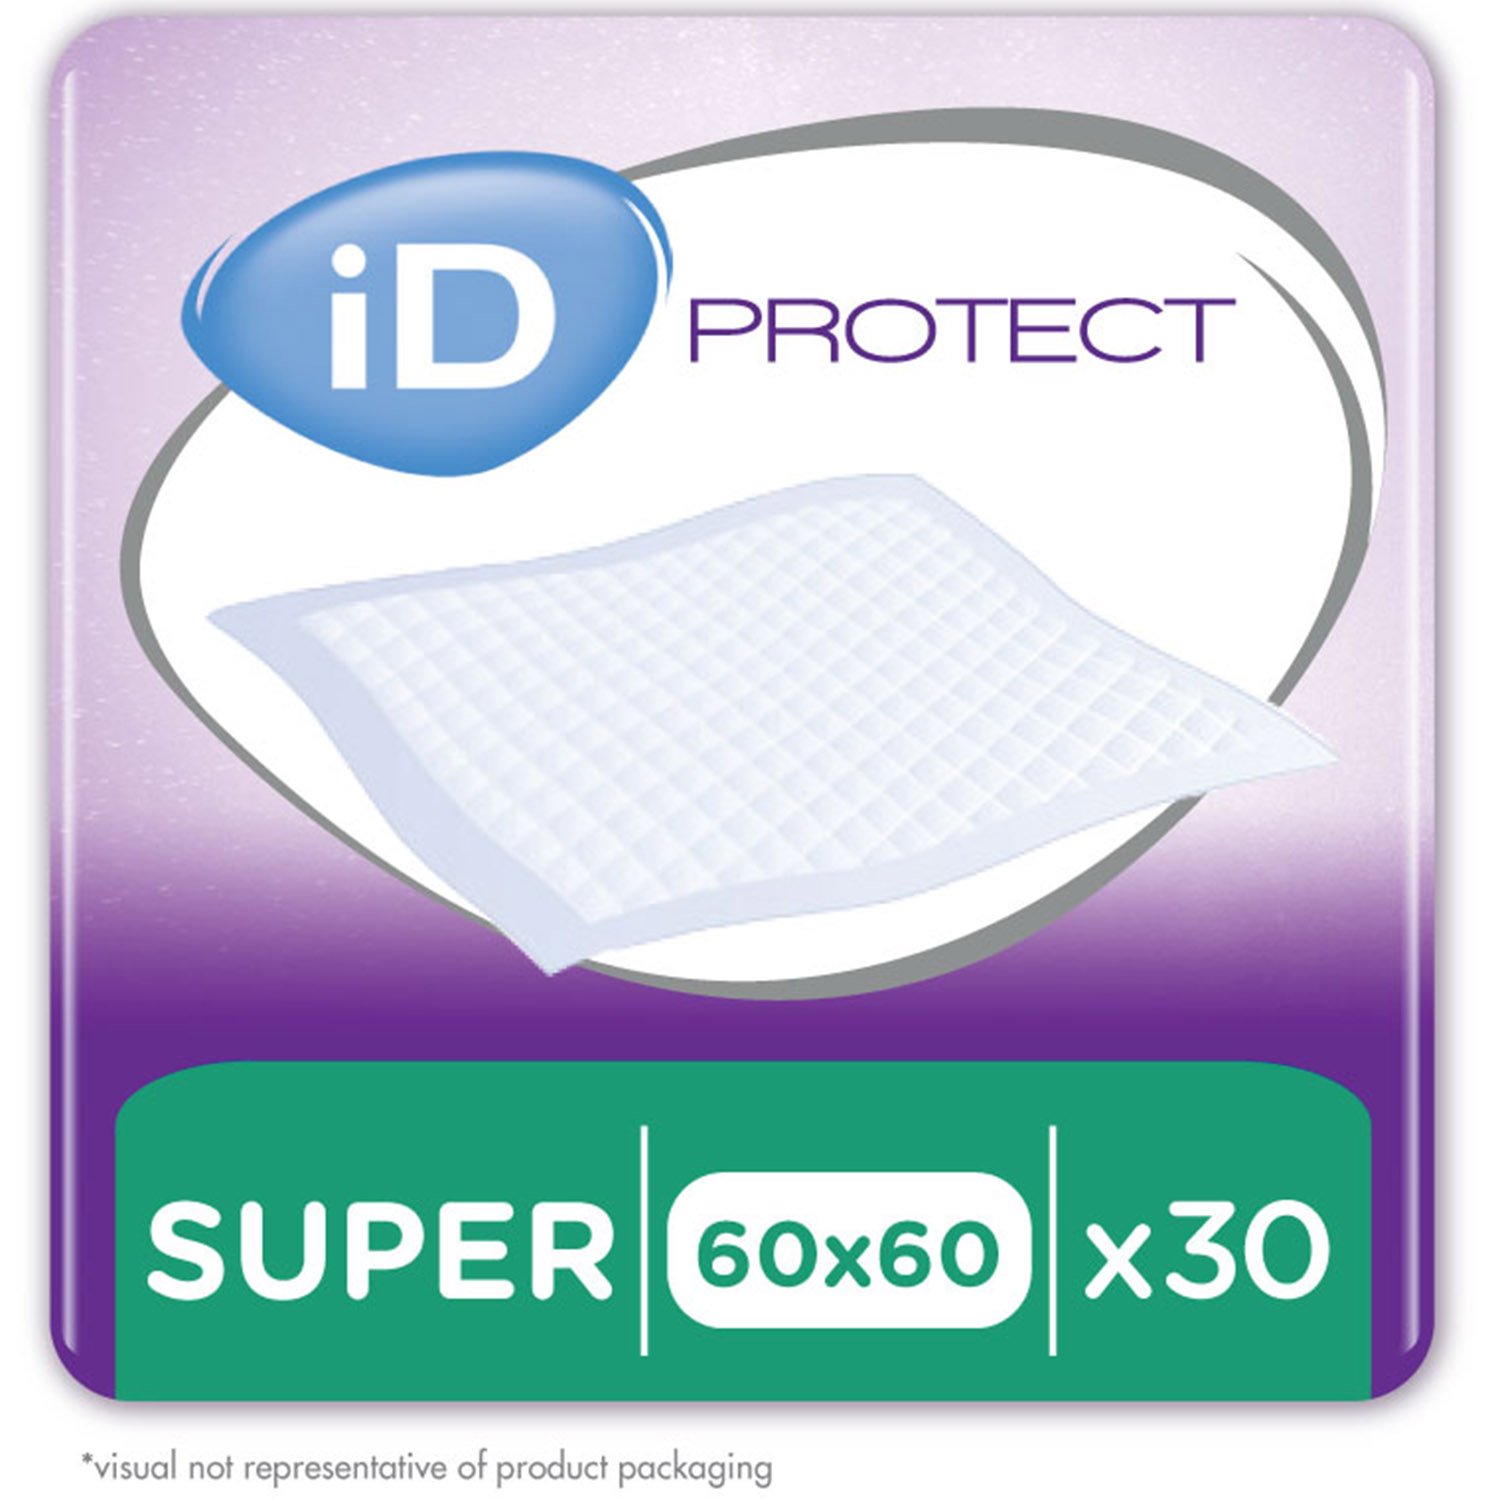 Одноразовые гигиенические пеленки iD Protect Expert Super, 60x60 см, 30 шт. - фото 1